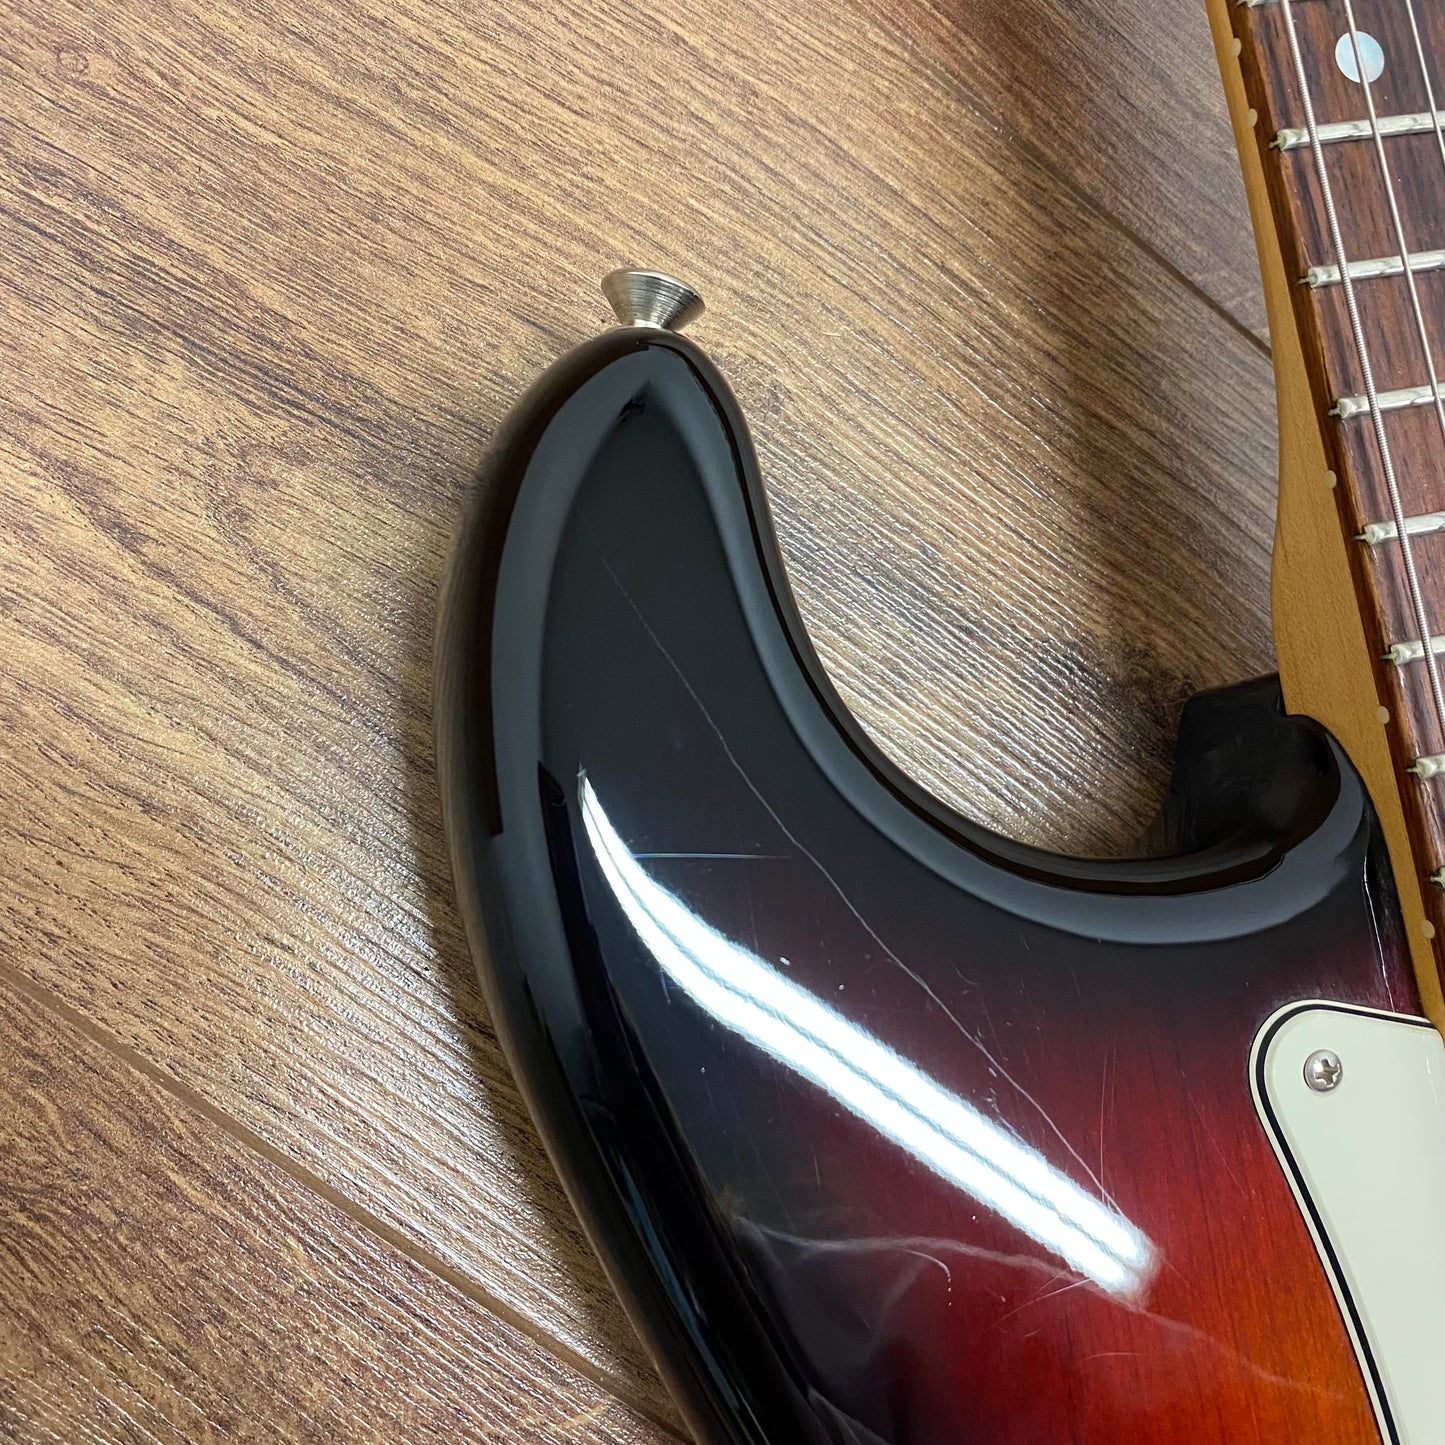 Pre-Owned Fender American Elite Stratocaster - 3-Tone Sunburst - 2016